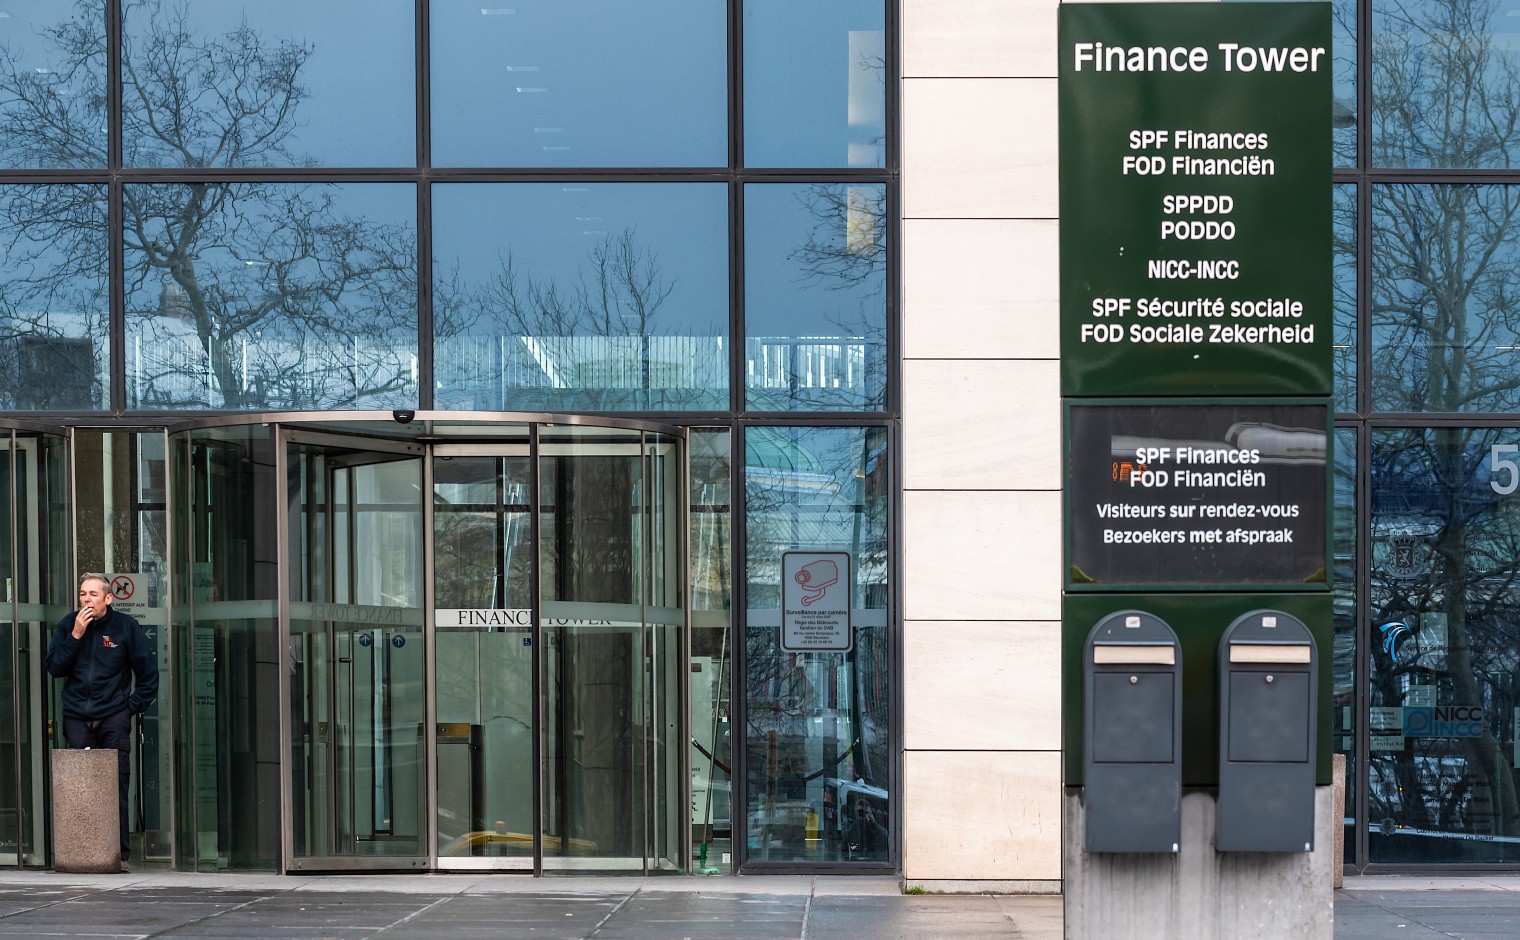 De Finance Tower in Brussel, vanuit waar de FOD Financiën werkzaam is.